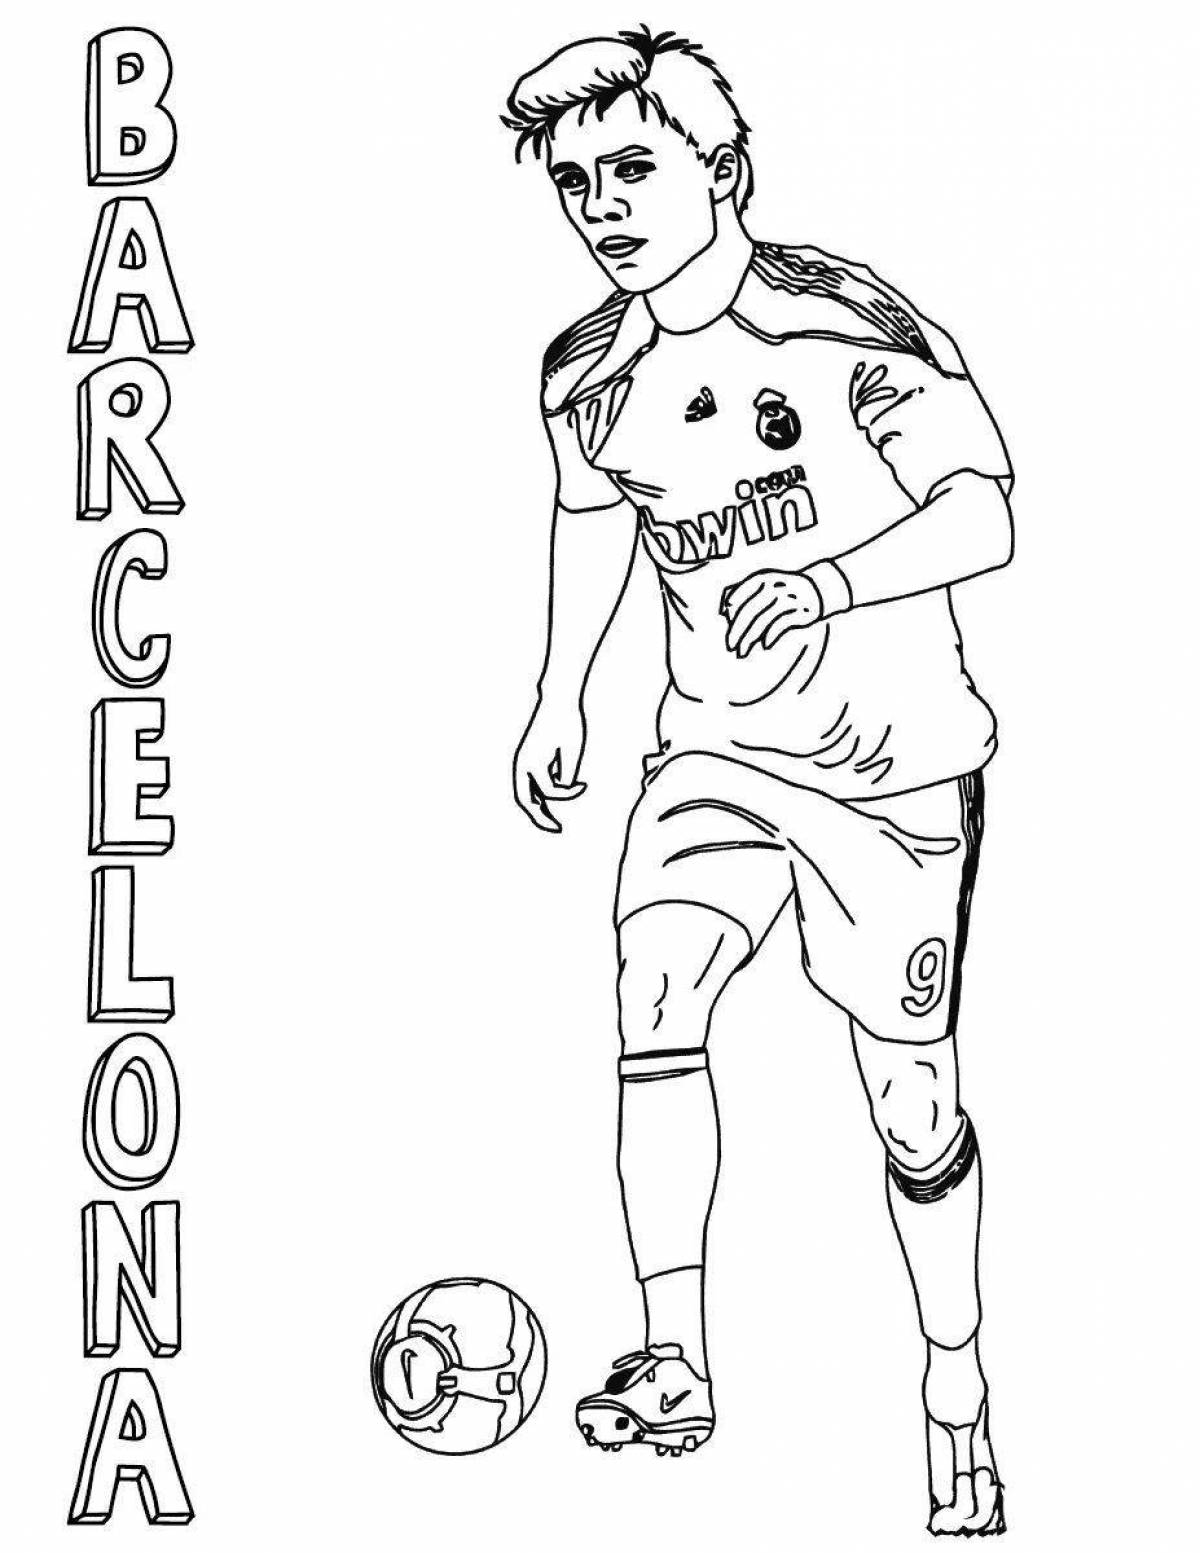 Playful football players of barcelona